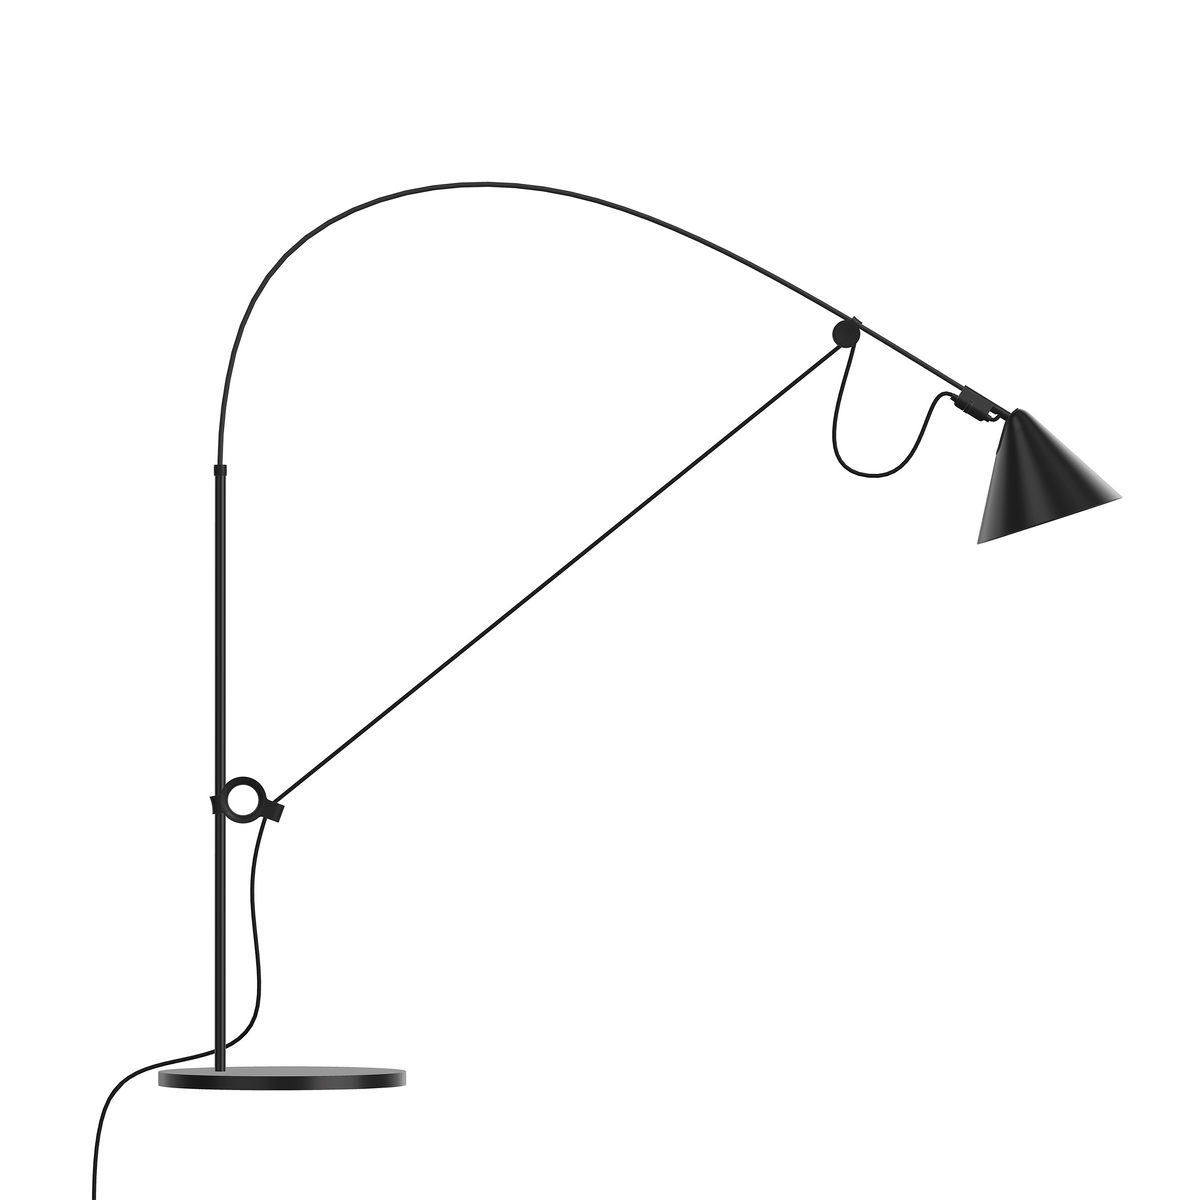 Midgard, Ayno Table Lamp Black, black cord, Table / Task, Stefan Diez,